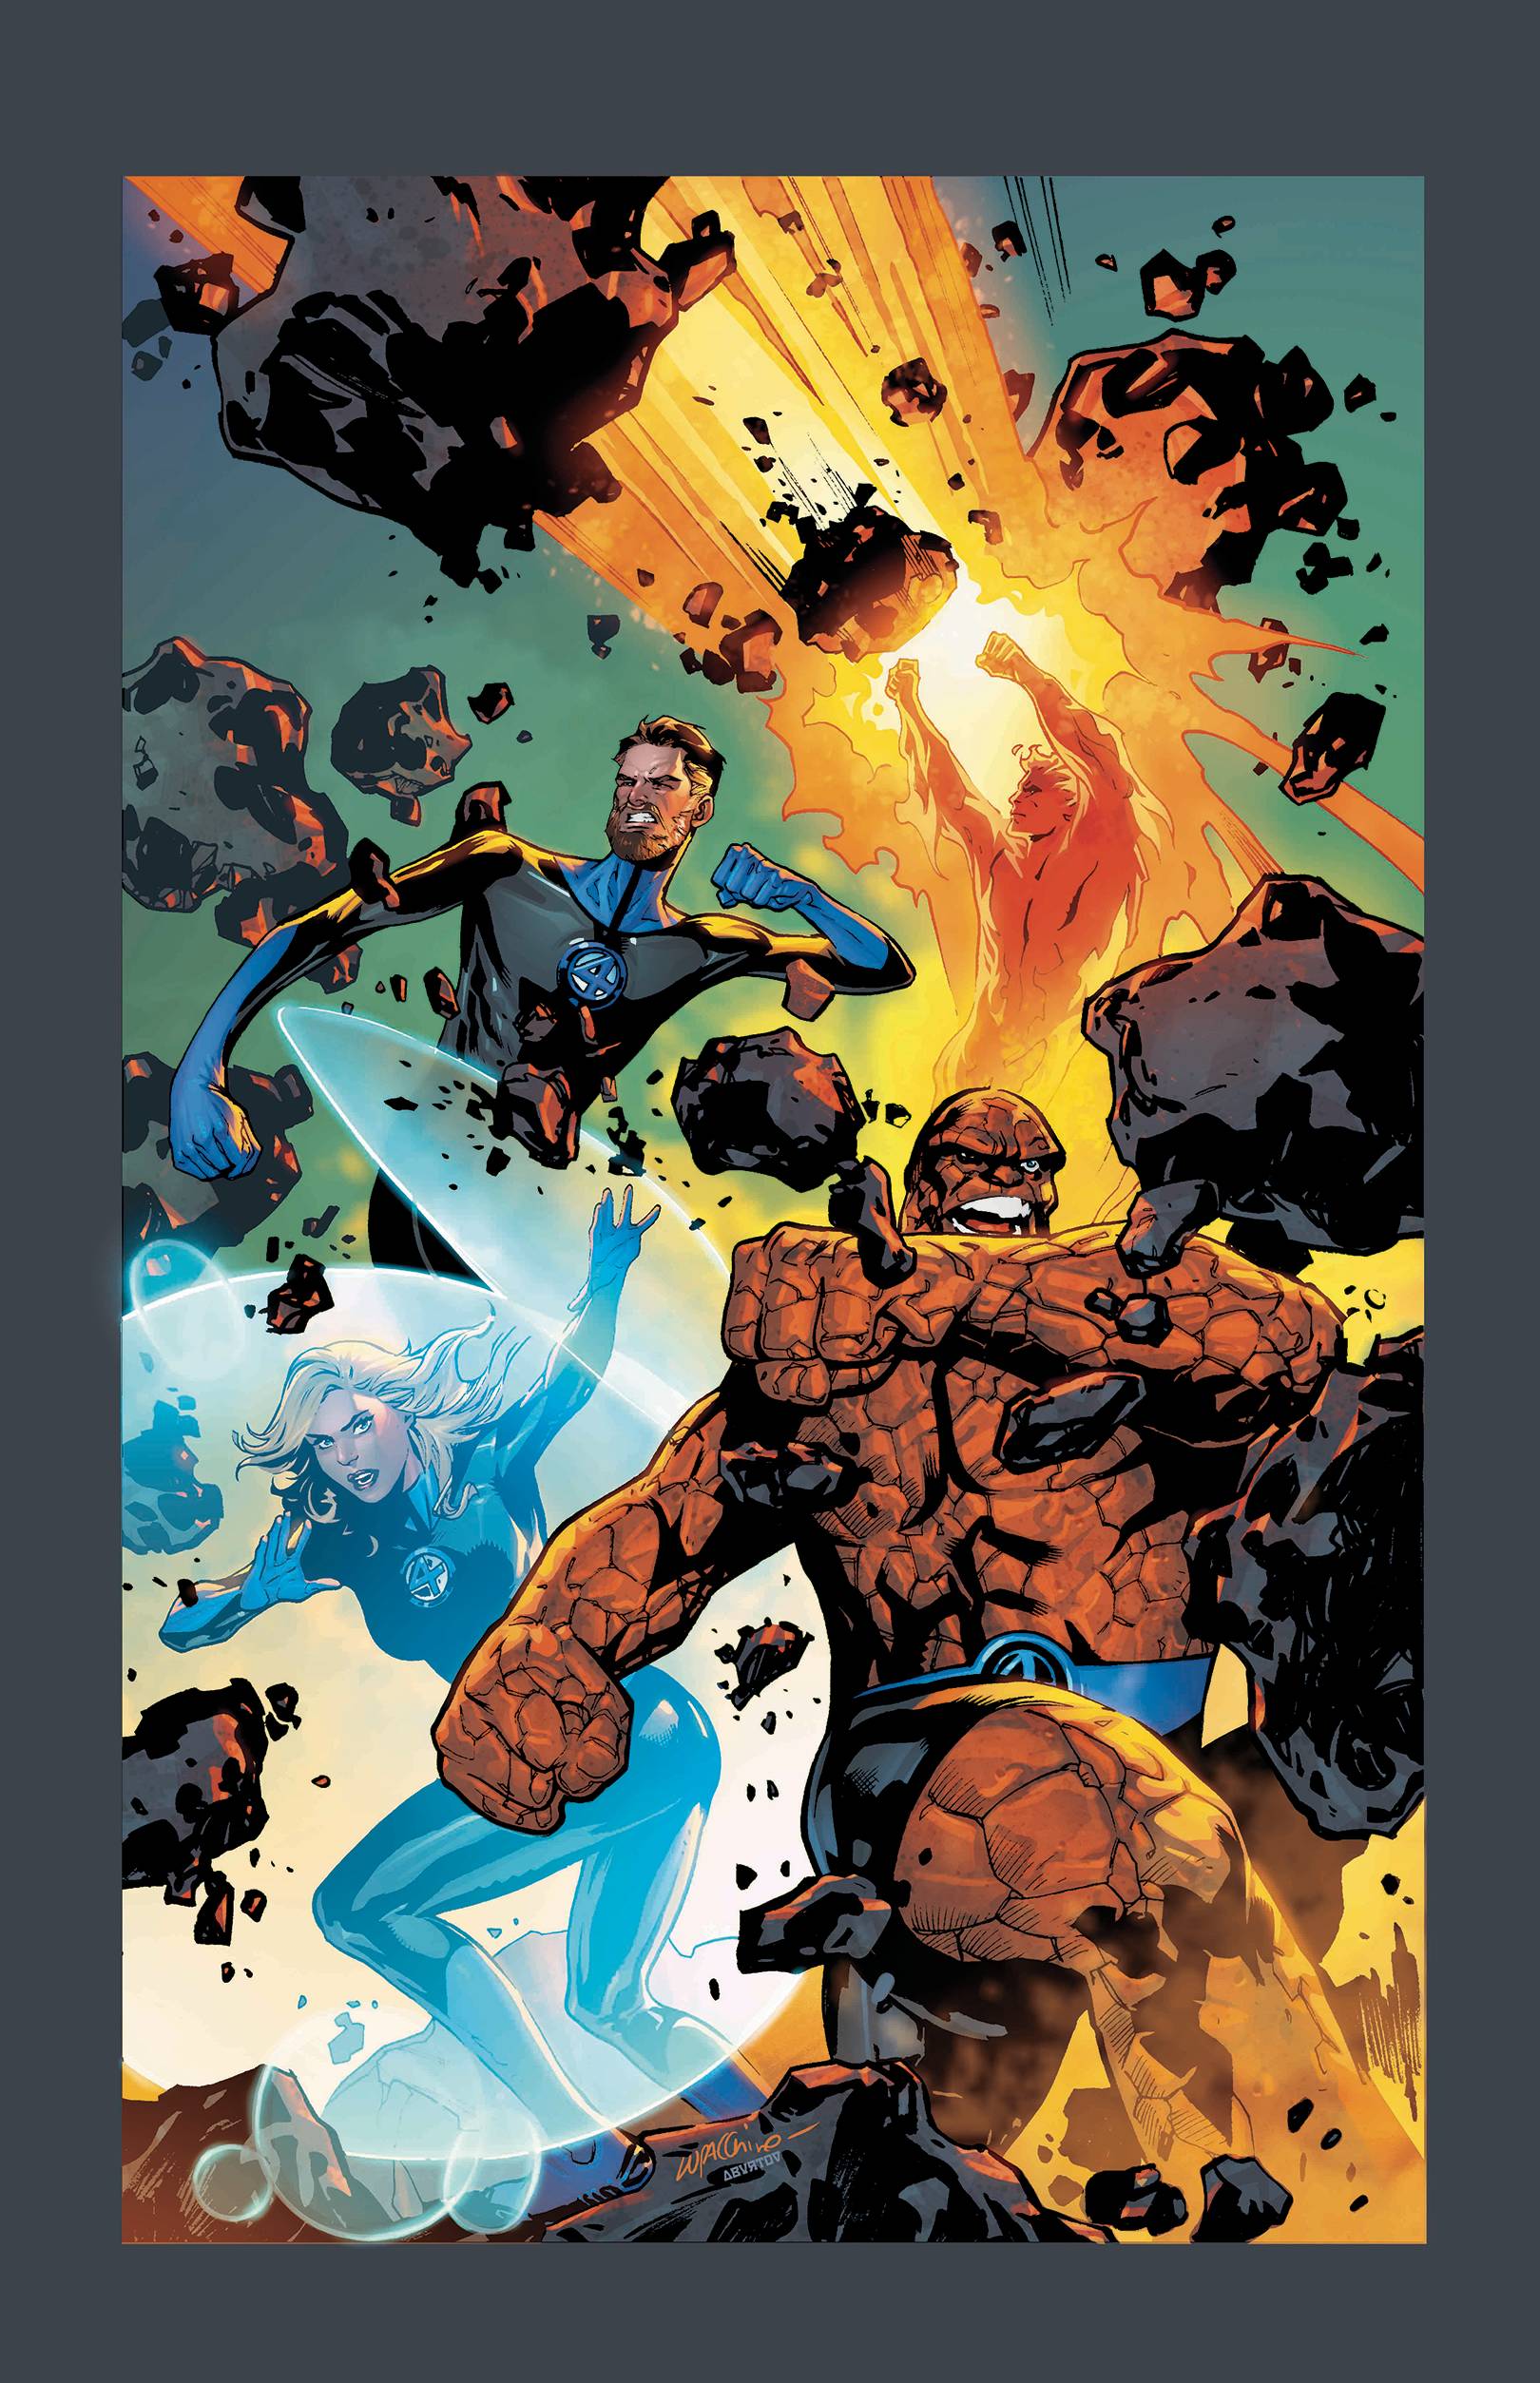 Fantastic Four (6th Series) 1 Var A-14 Comic Book NM